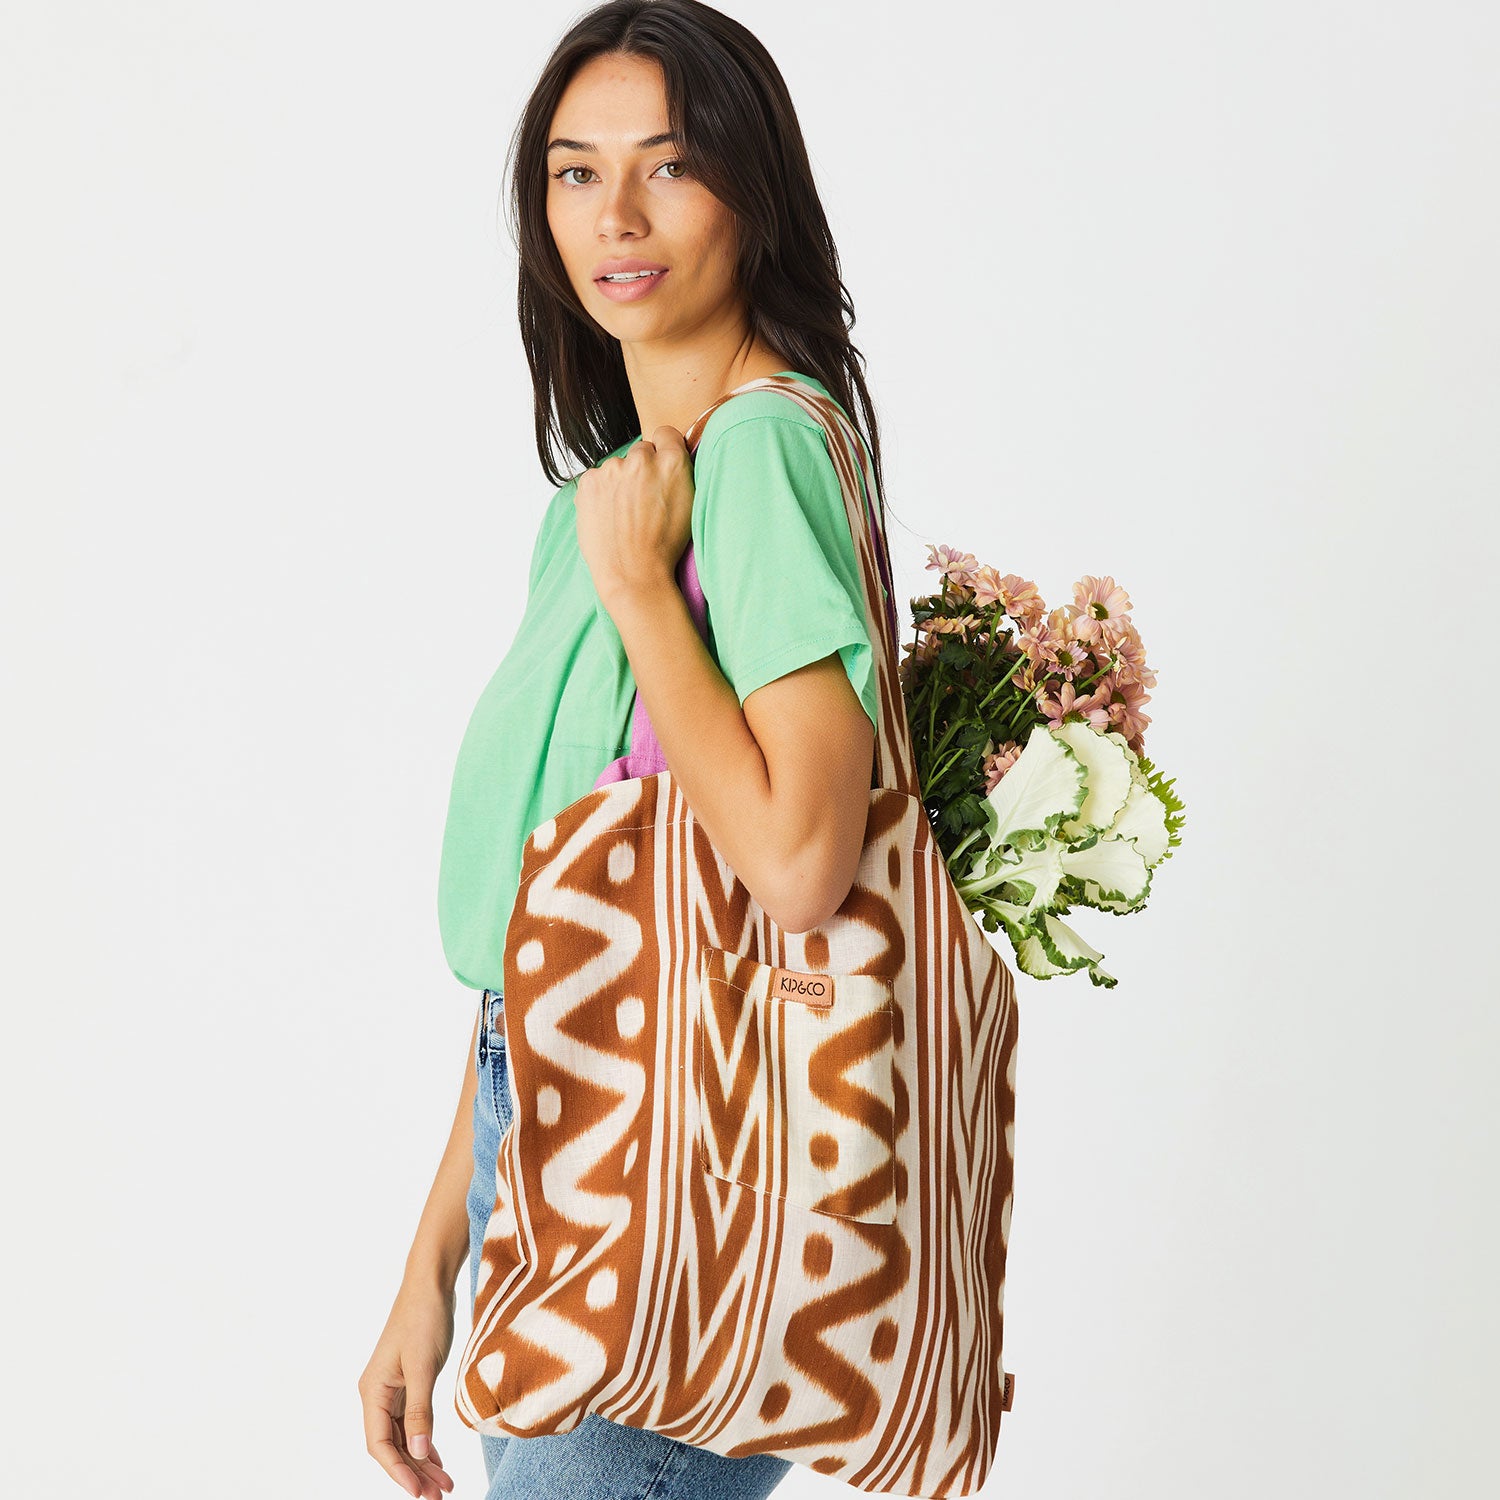 Linen Shopper Bag - Ikat & Dreams Coconut